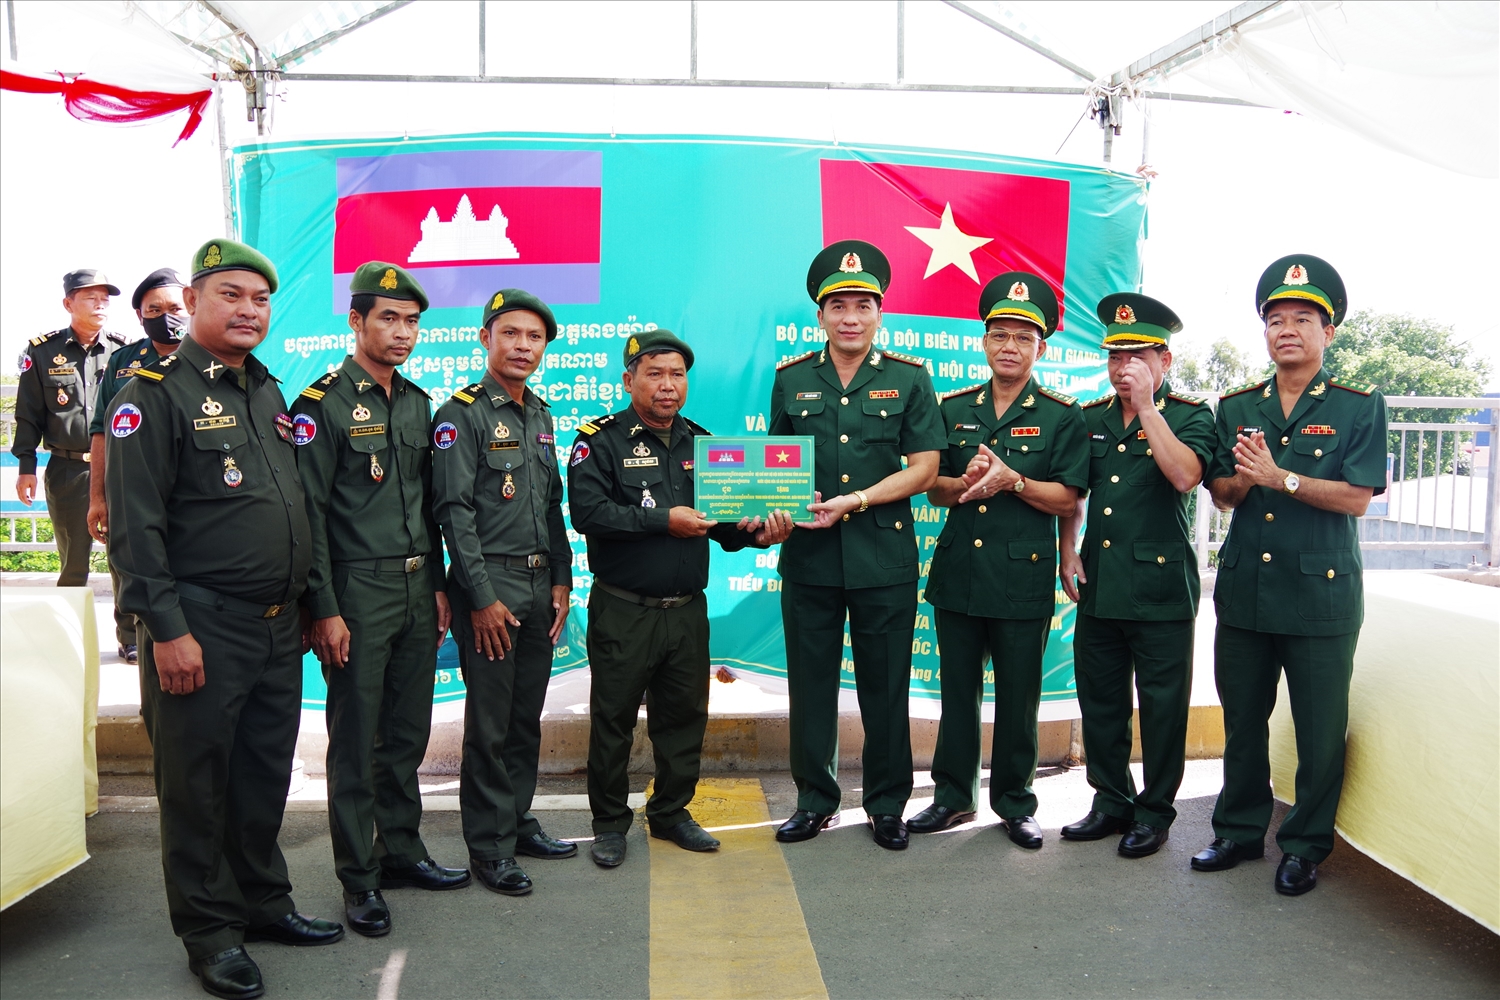 Đại tá Trần Quốc Khánh chỉ huy trưởng BĐBP tỉnh An Giang tặng quà cho lực lượng bảo vệ biên giới tỉnh Takeo, Campuchia.